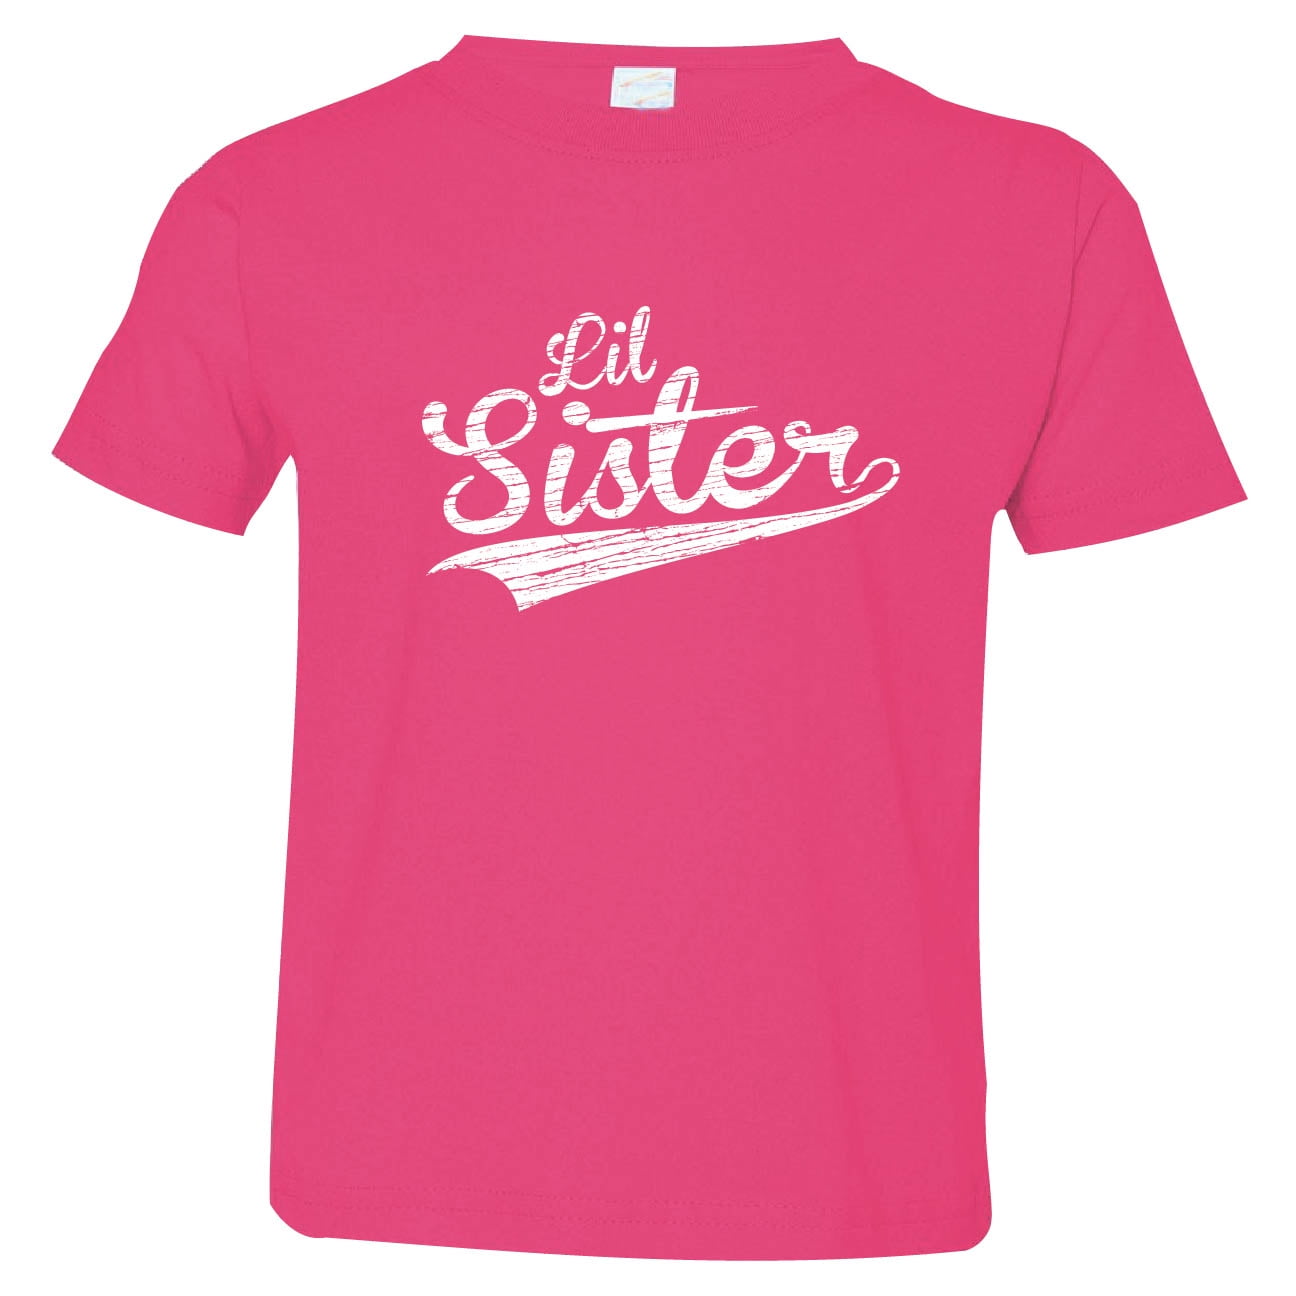 Girls Baseball Shirt/ Little Sister Baseball/ Baseball Life/ Toddler Girls Ballpark Outfit/ Baseball Shirt/ Gameday Shirt/ Teeball Shirt